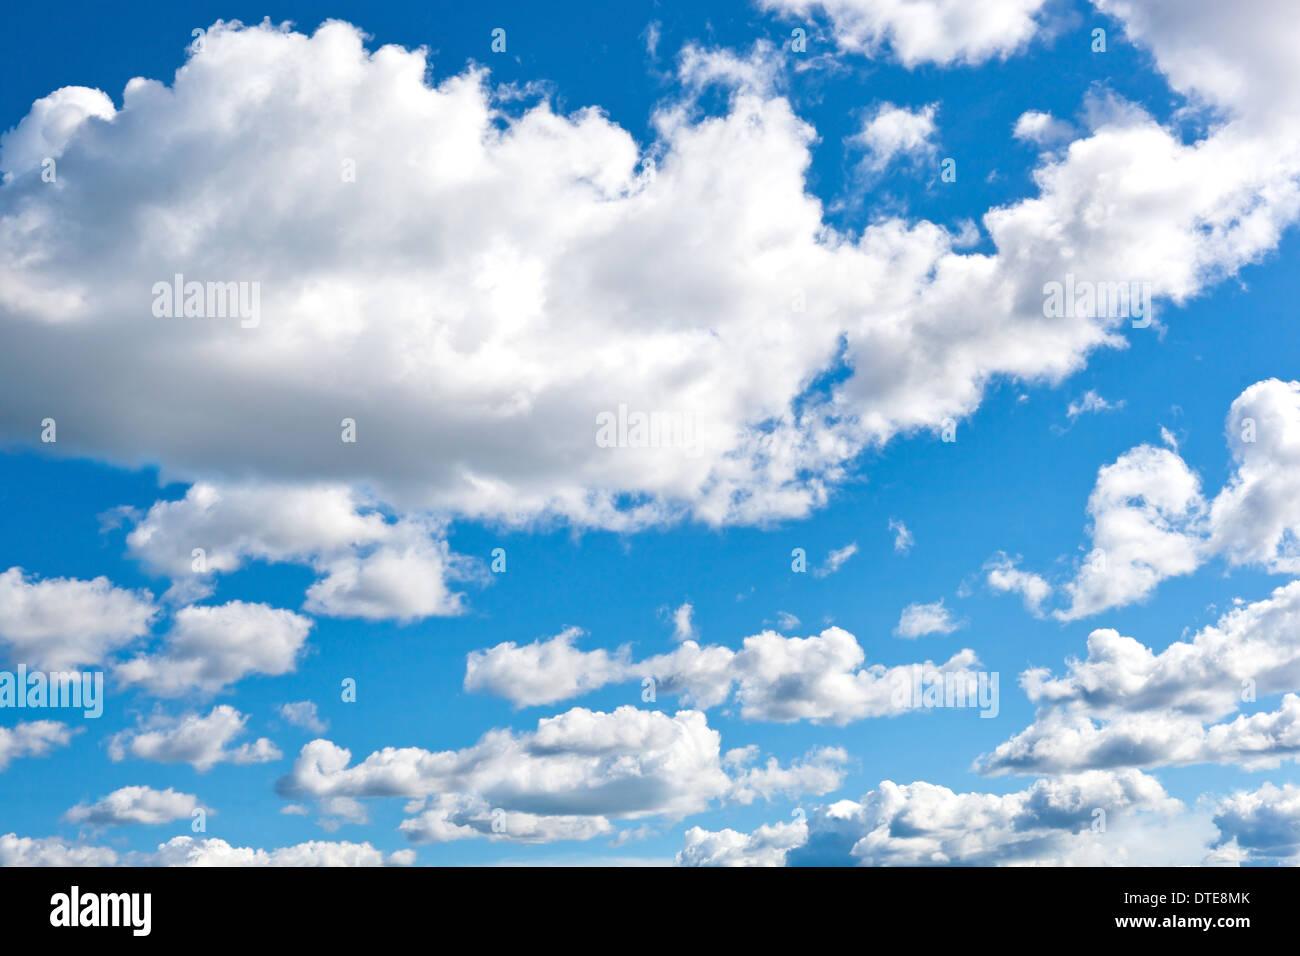 Cloudly fond ciel bleu Banque D'Images